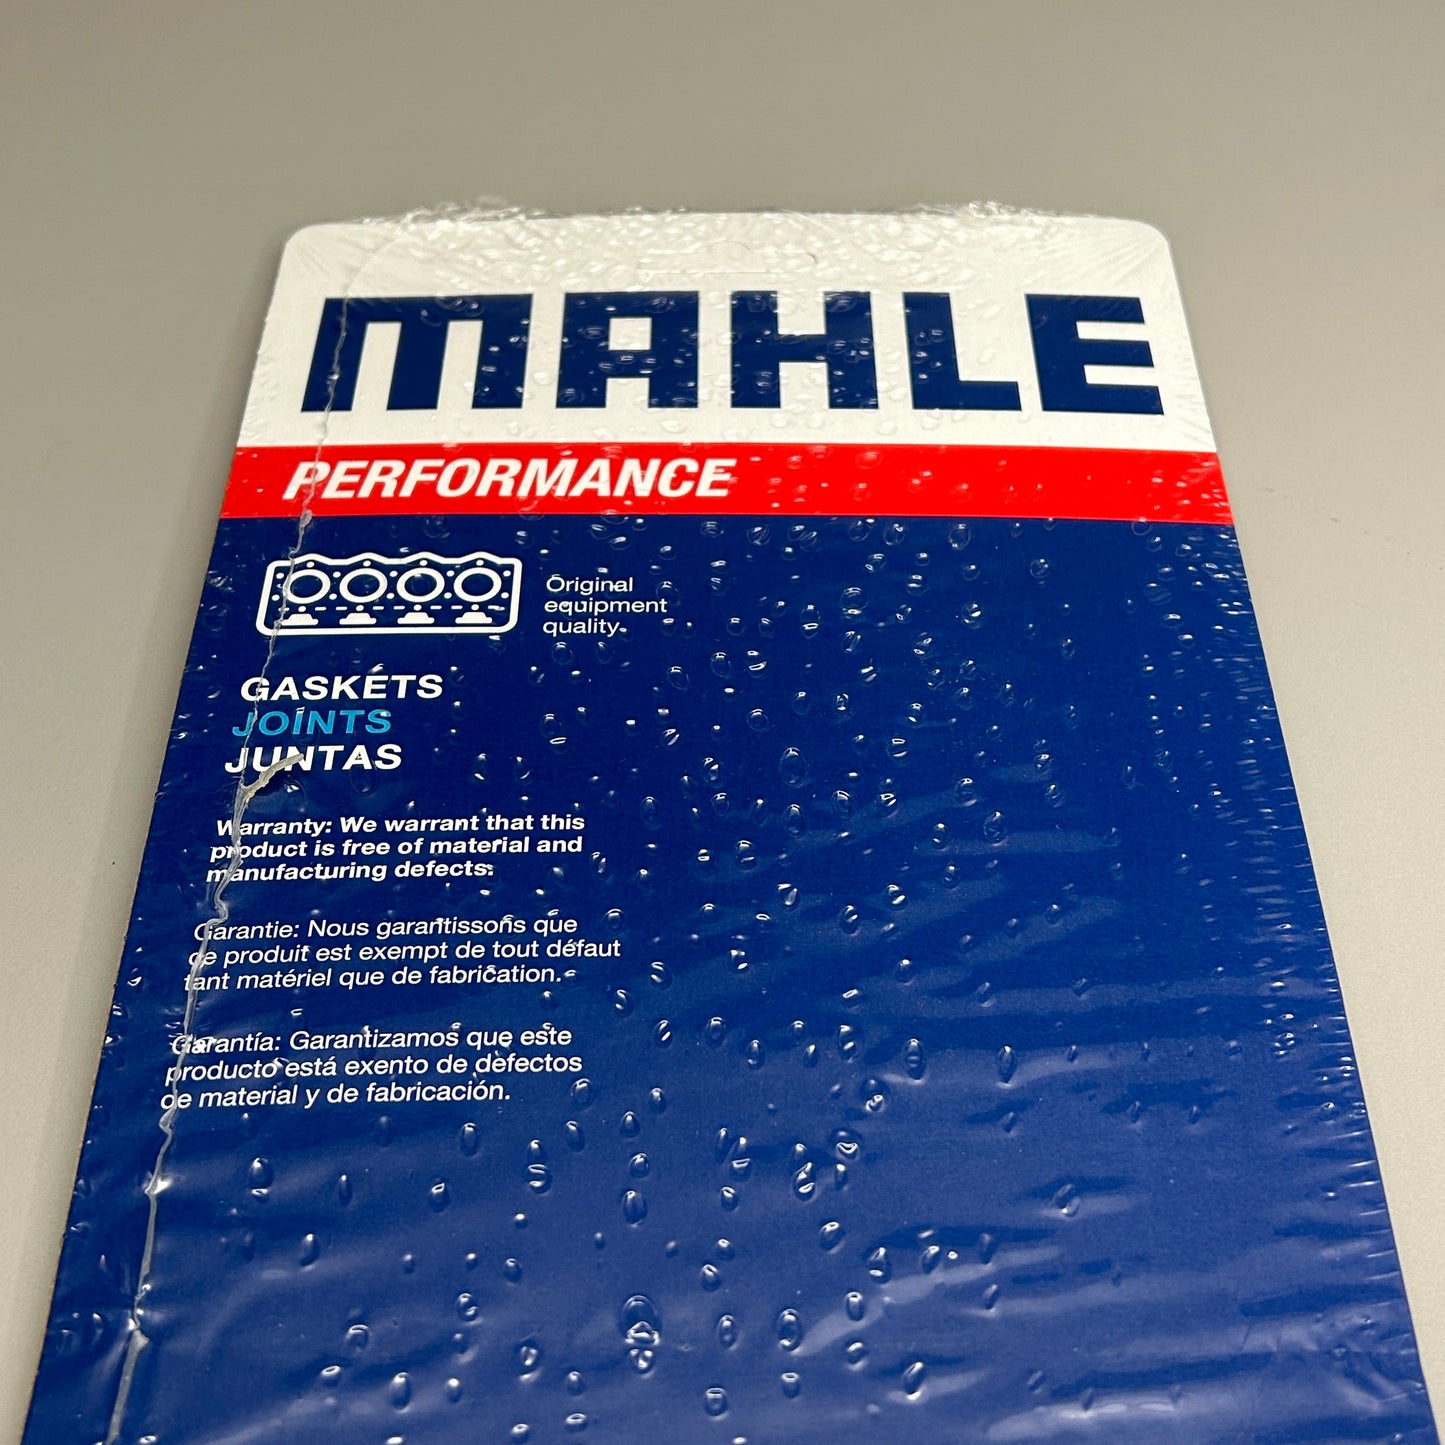 MAHLE Engine Valve Cover Gasket Set for Chrysler VS39569H (New)